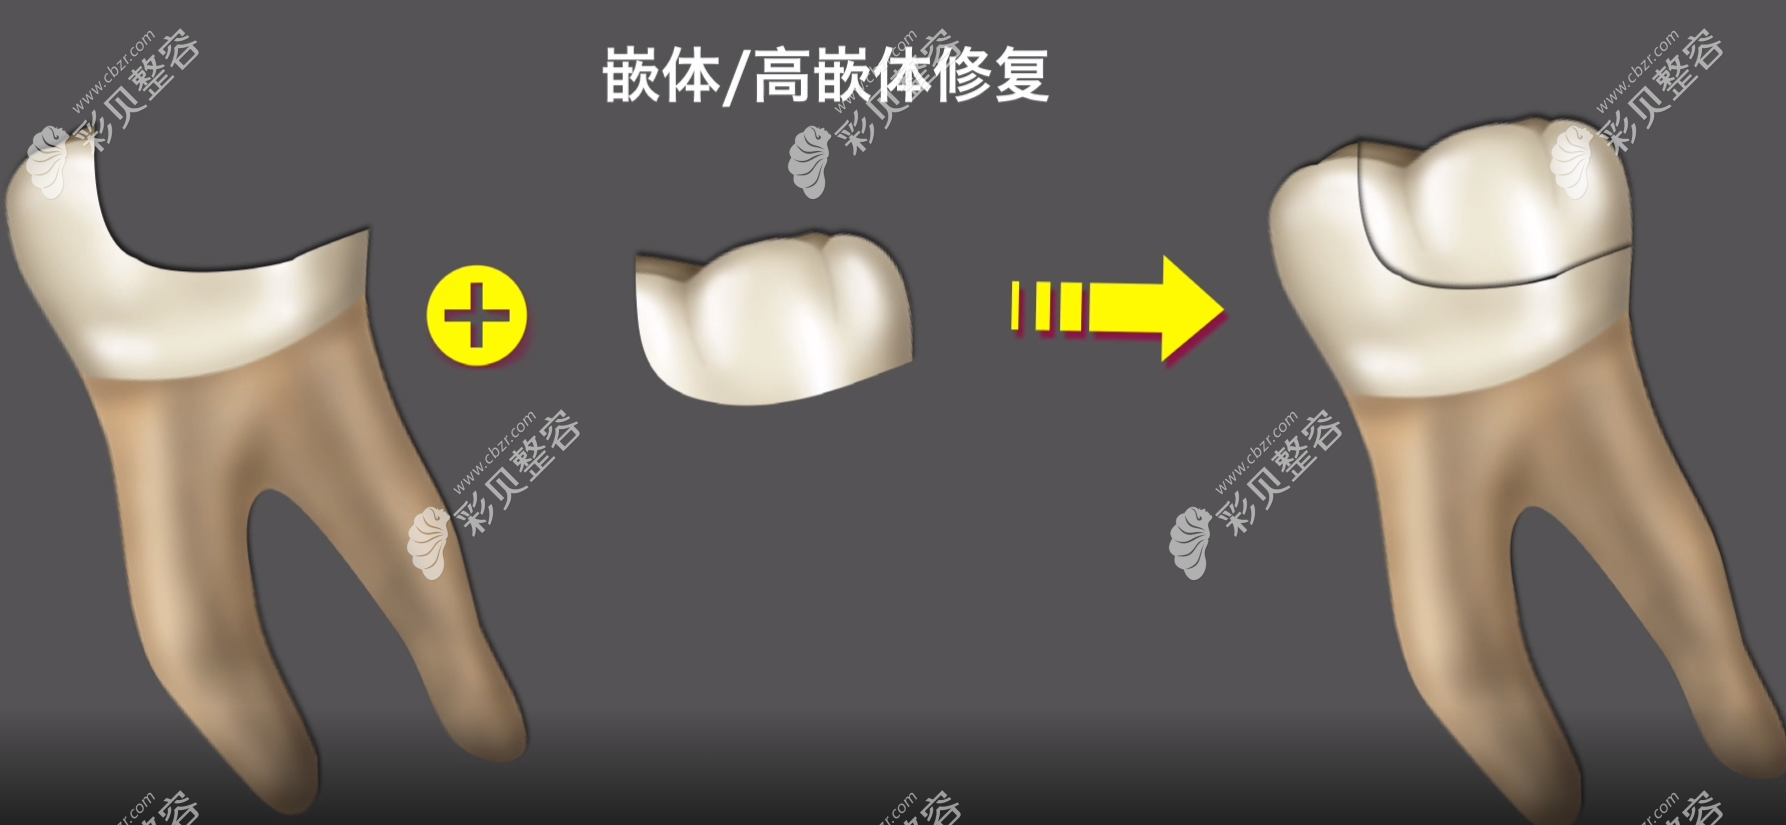 嵌体补牙过程图解